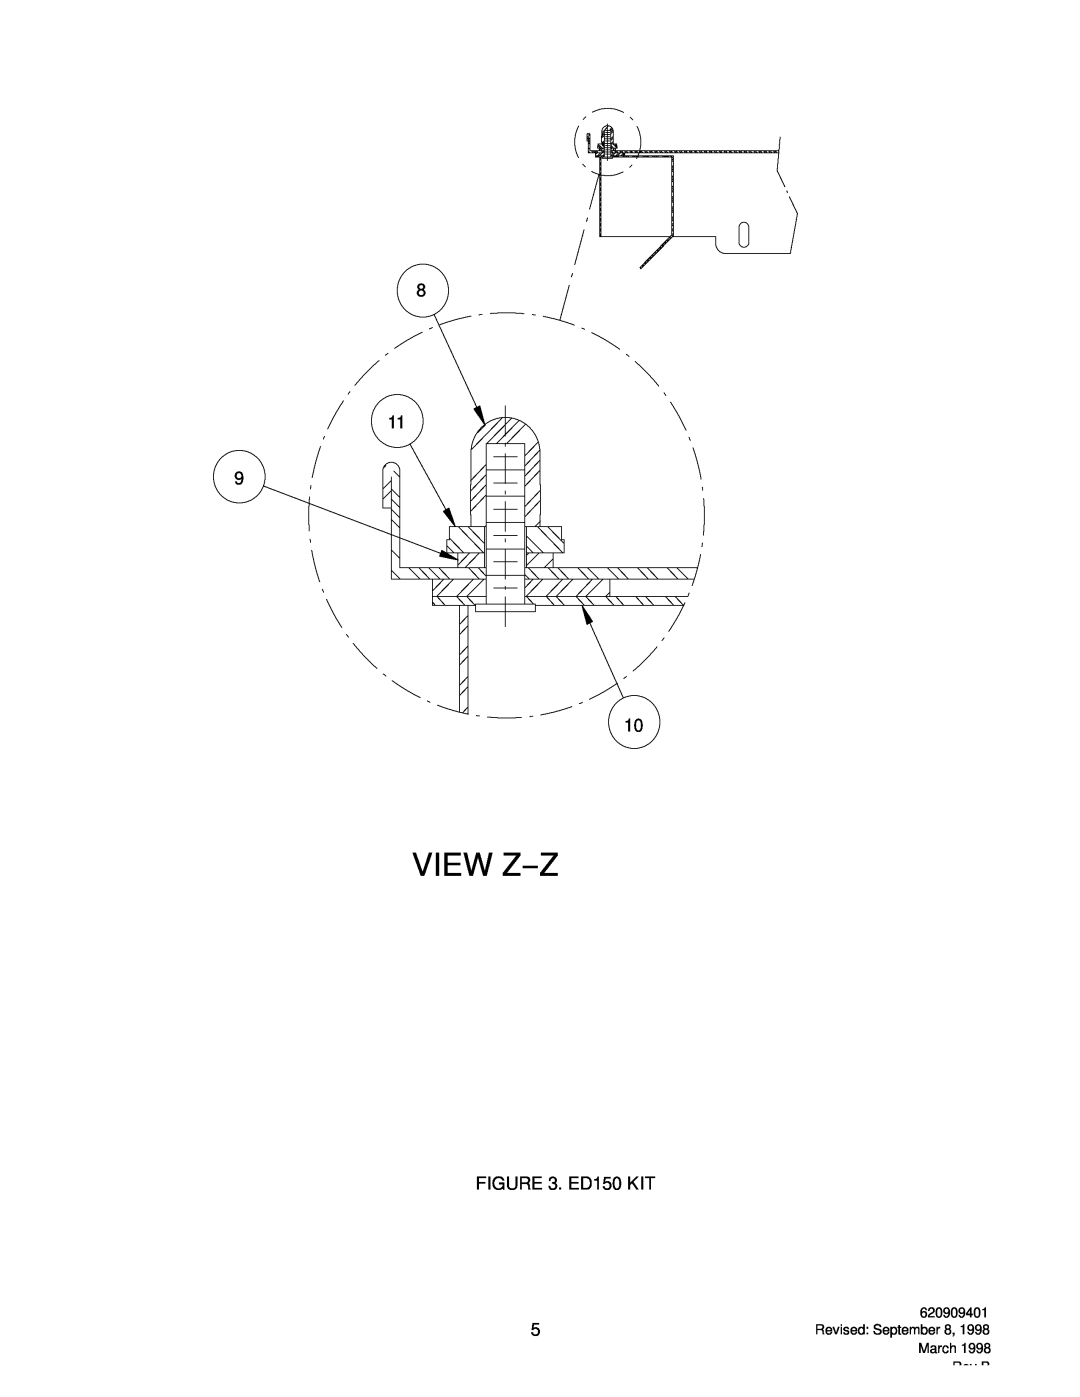 Cornelius P/N 629083204, P/N 629083202 manual View Z--Z, ED150 KIT, Revised September 8, 1998 March Rev B 